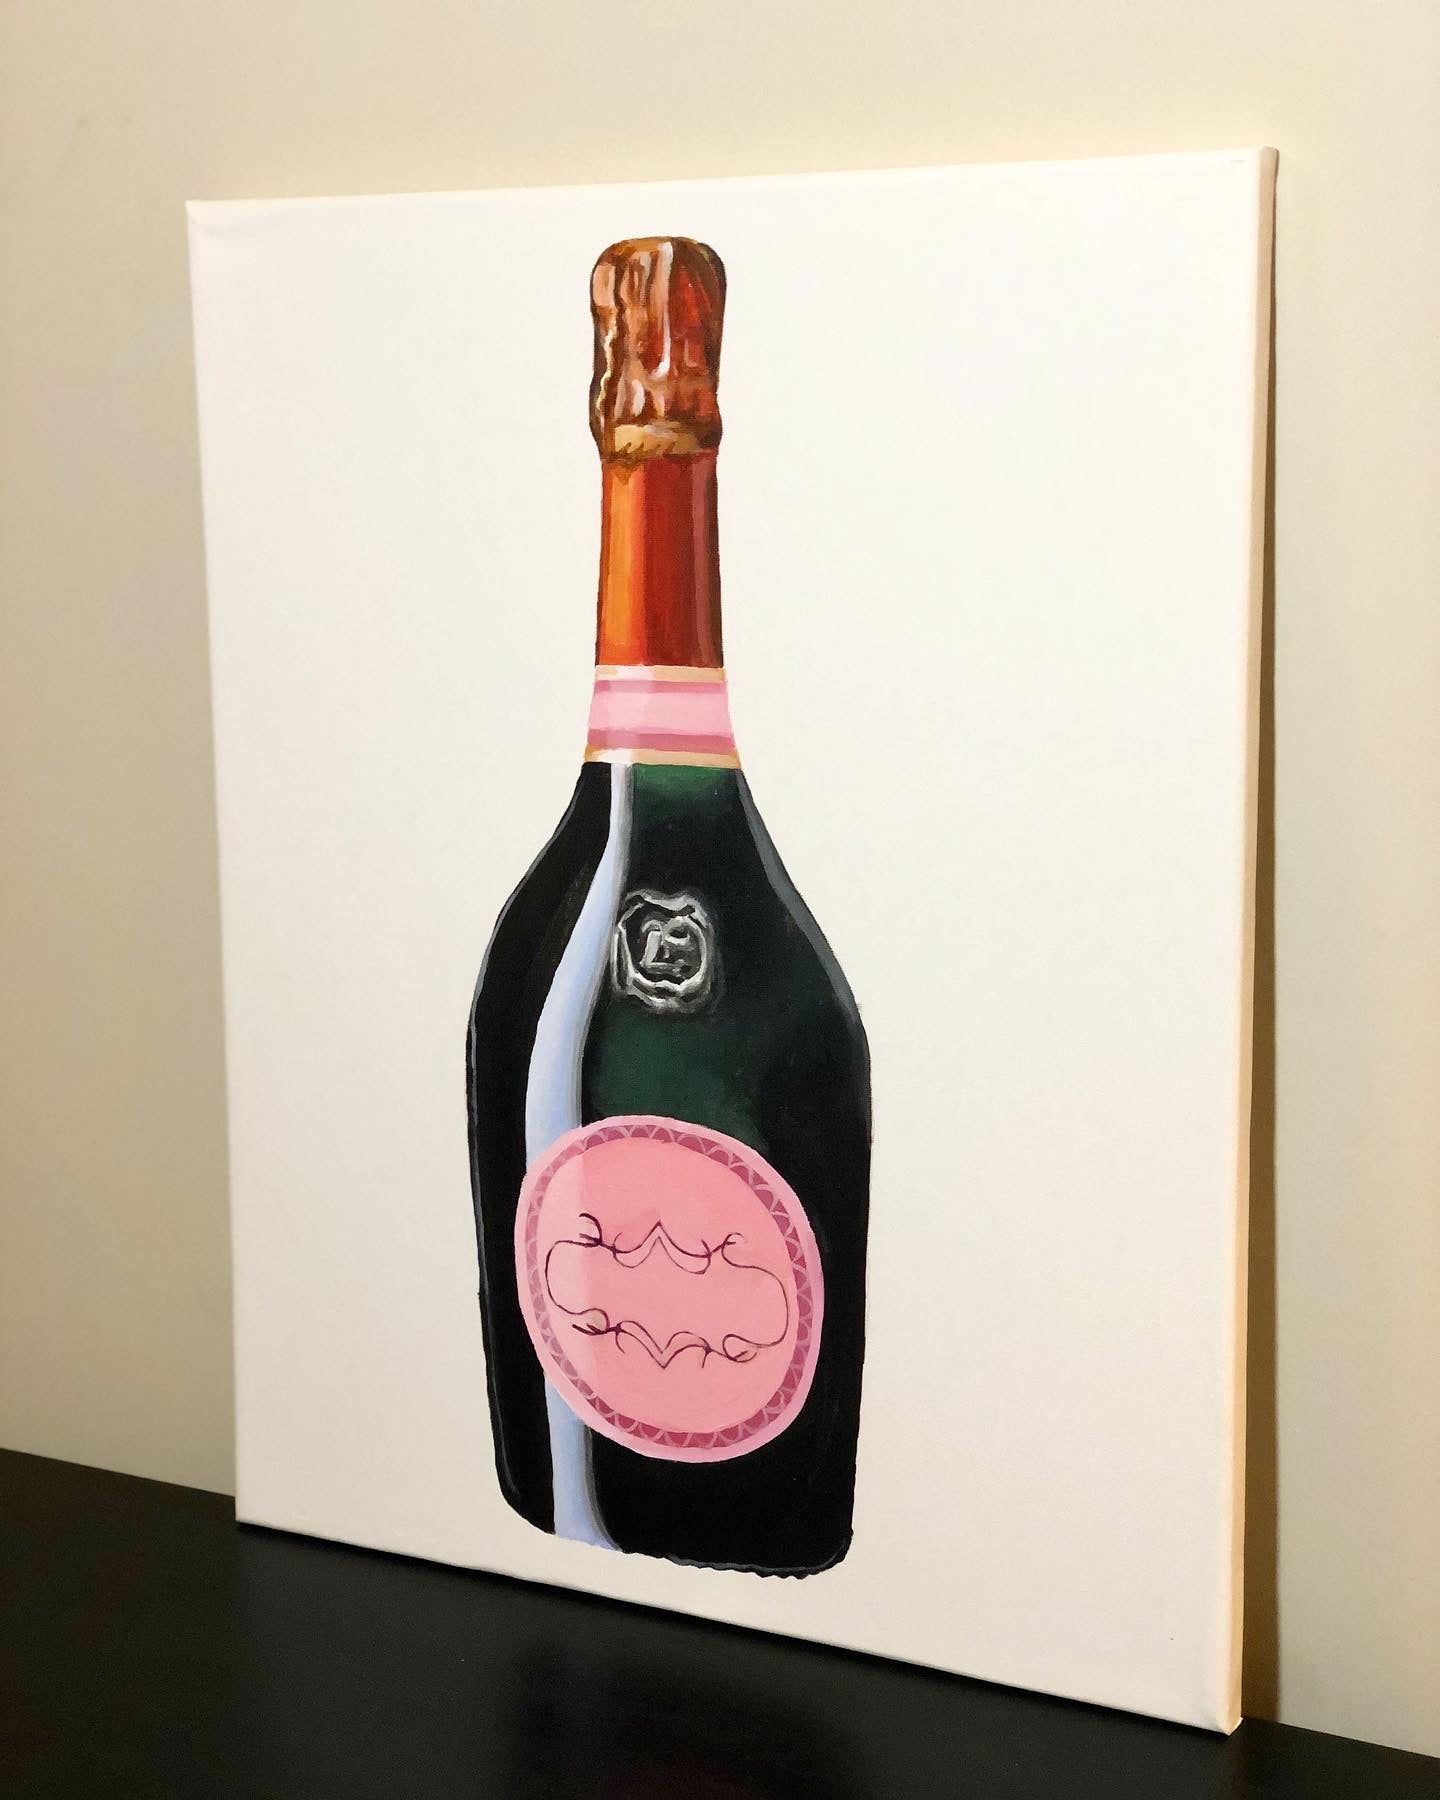 Laurent-Perrier Cuvée Rosé Champagne Painting